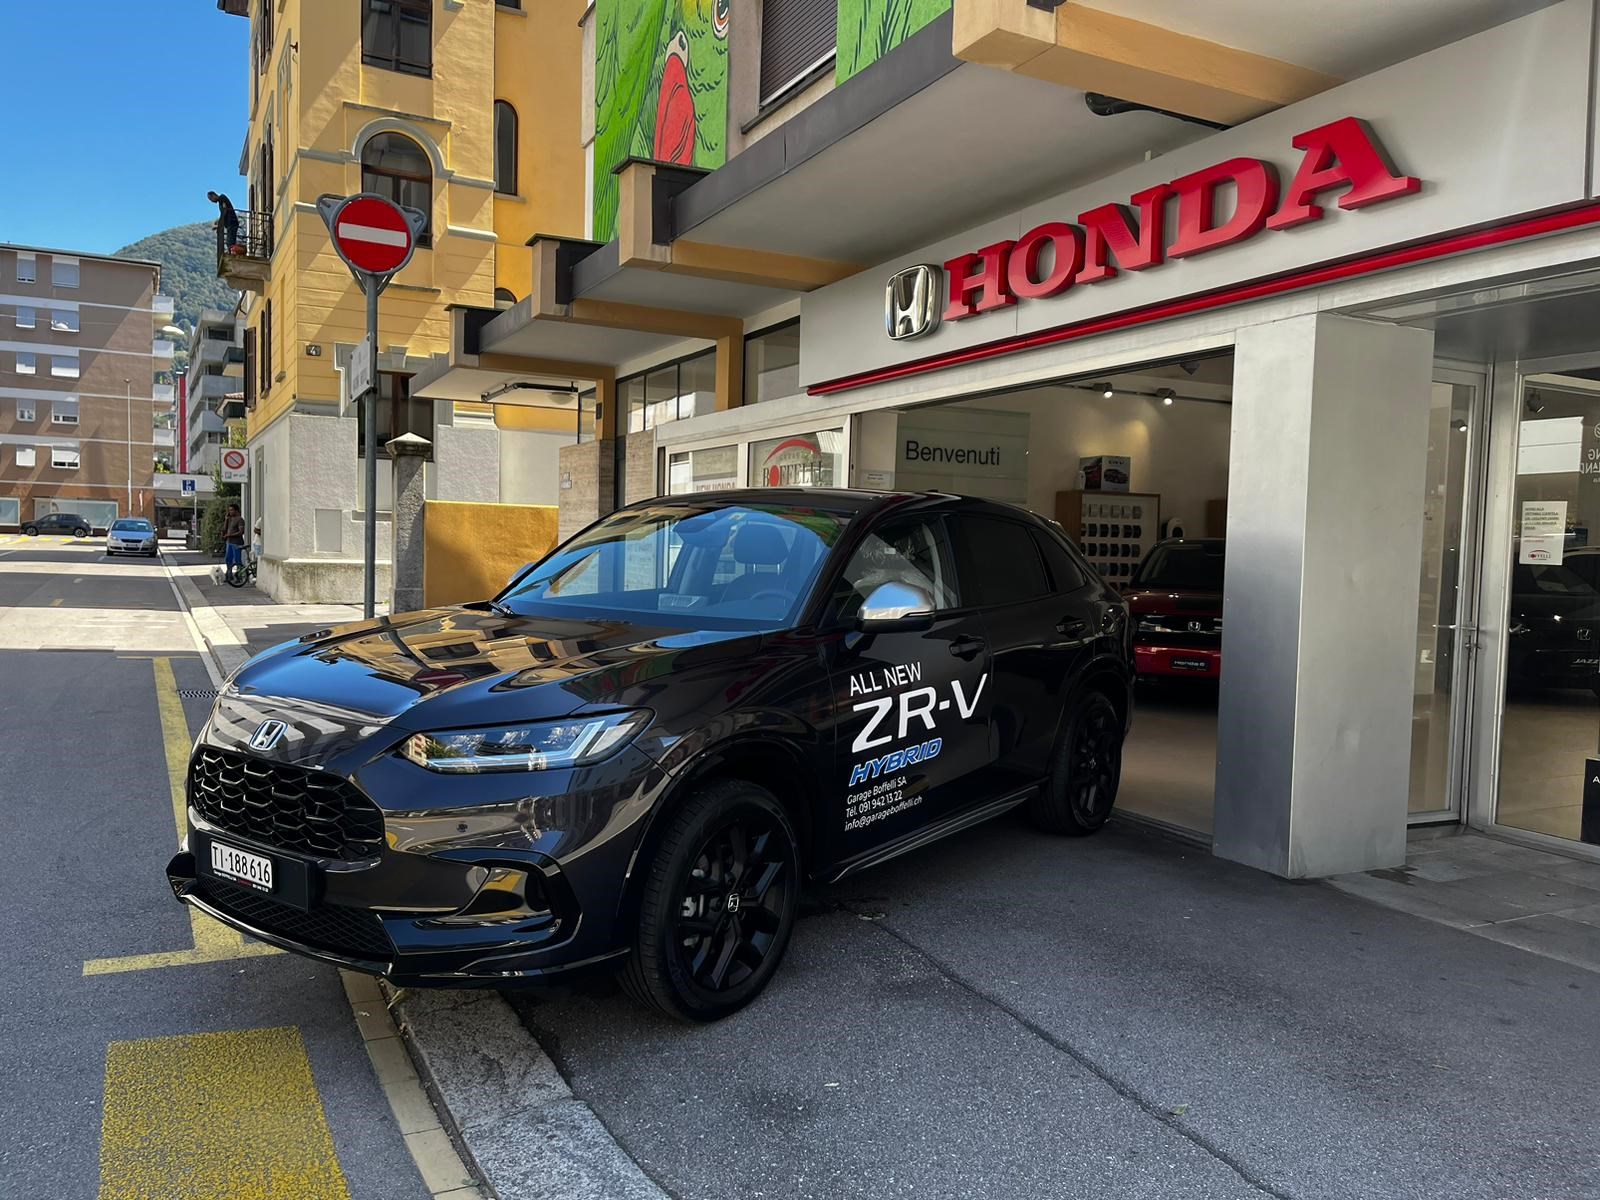 HONDA ZR-V 2.0i (SUV / Gelndewagen)